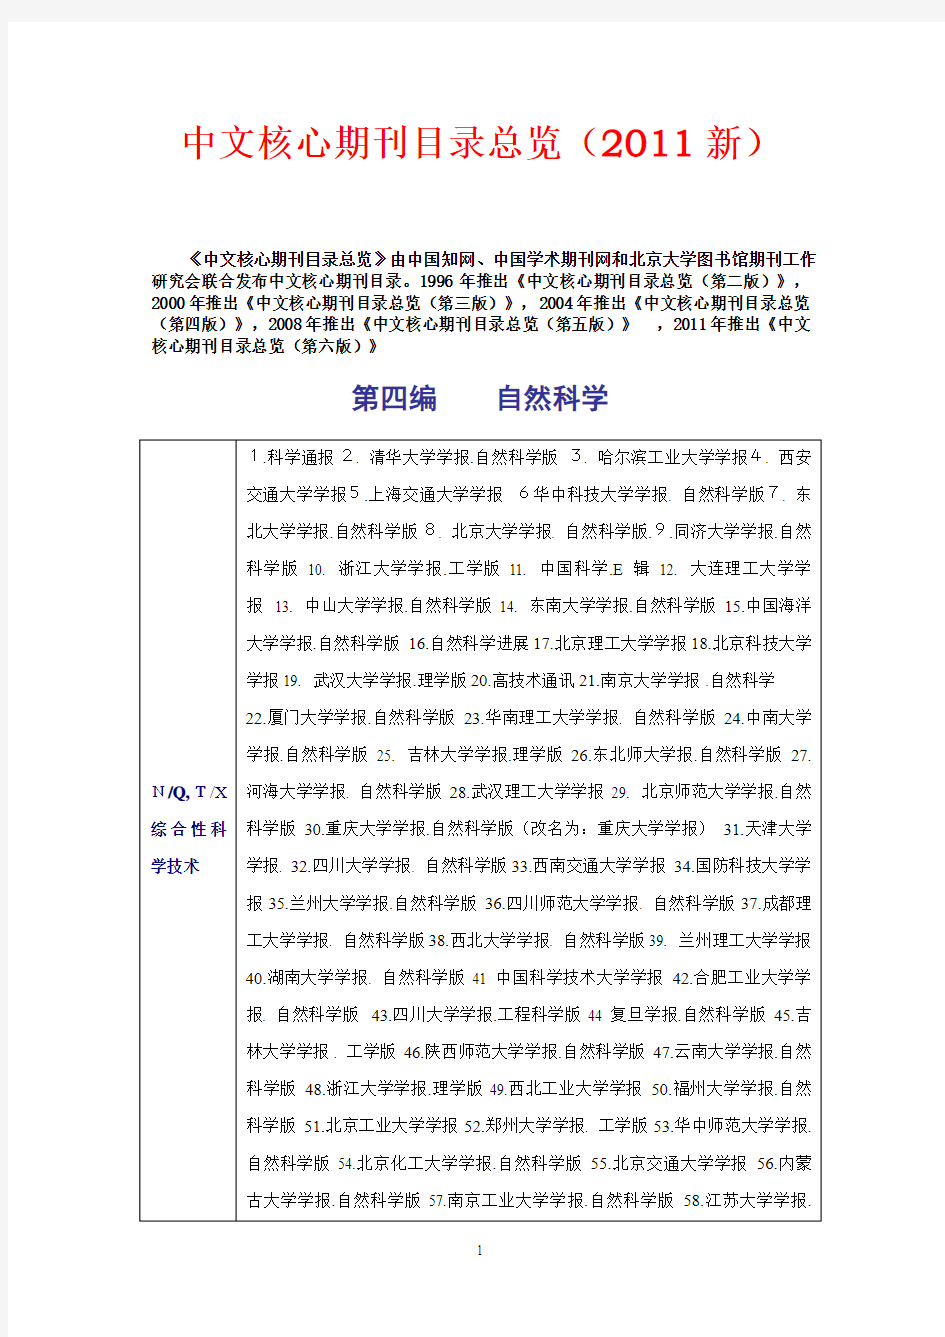 2011年版本,最新的《中文核心期刊目录》(发表研究论文投稿指南、评价学术论文的基本标准)